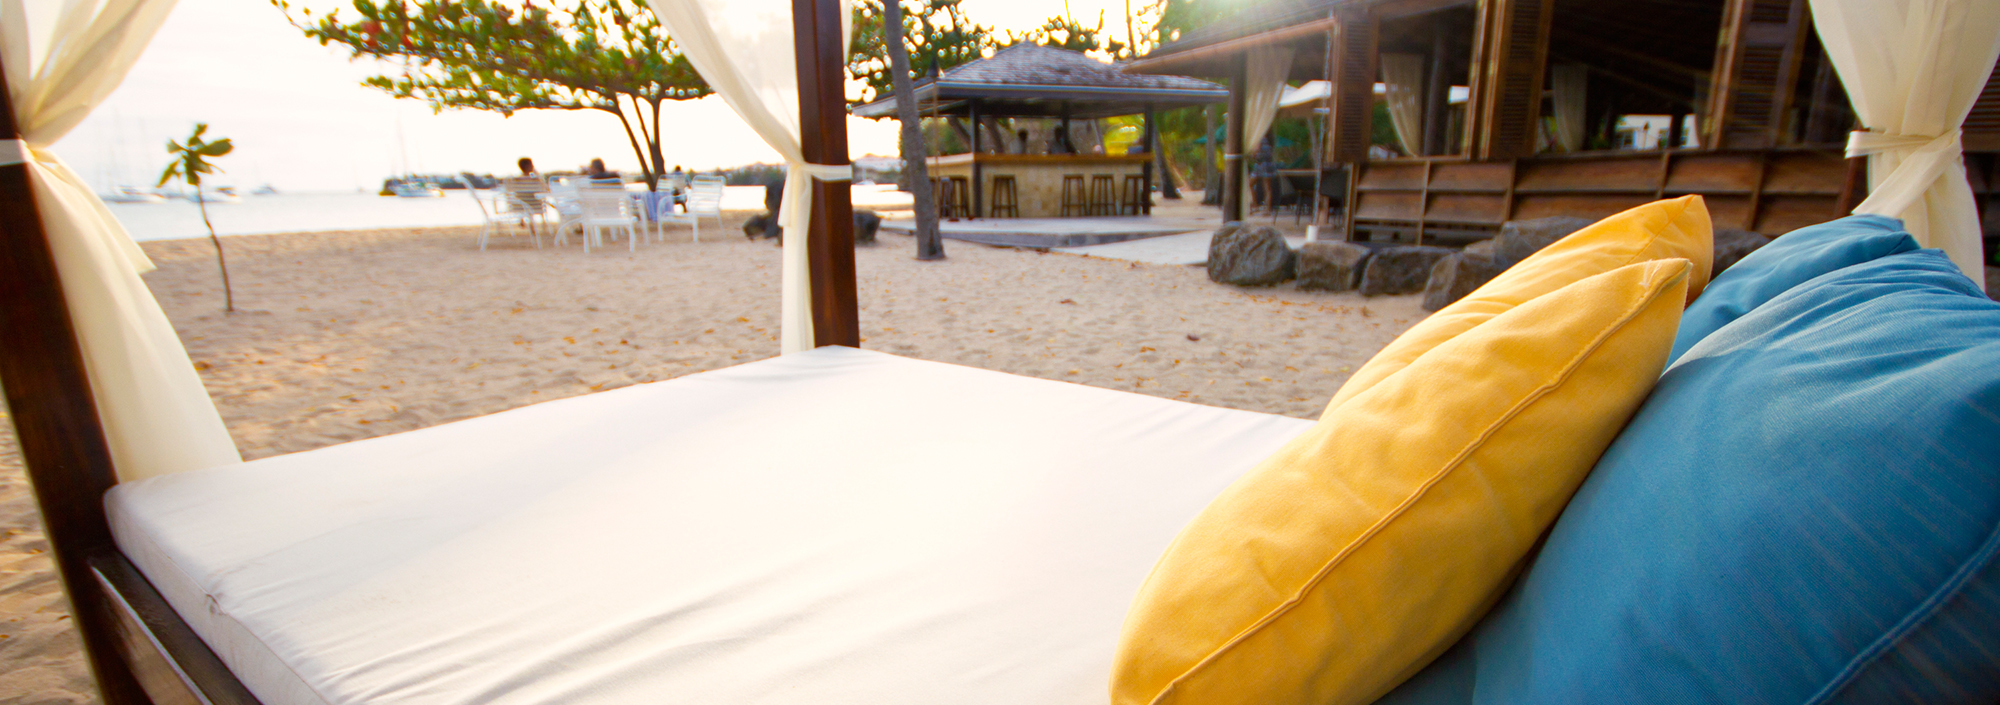 Ruhelounge am Strand in einem luxuriösen Hotel auf Grenada